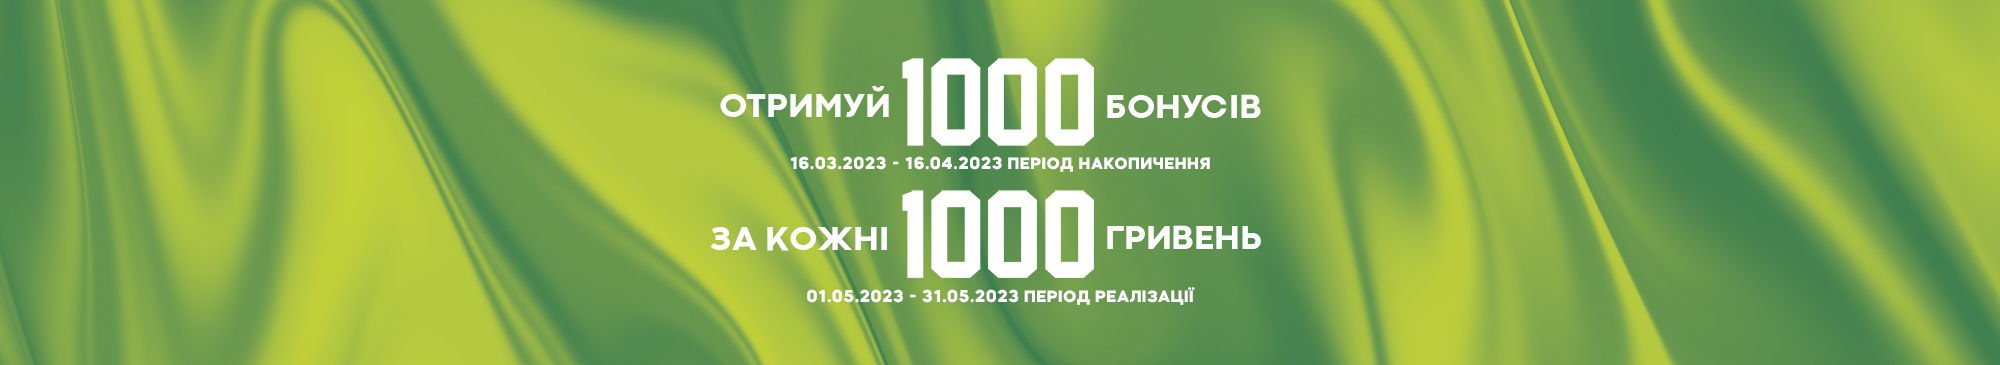 1000 бонусів за 1000 грн 16.03-16.04 - MEGASPORT